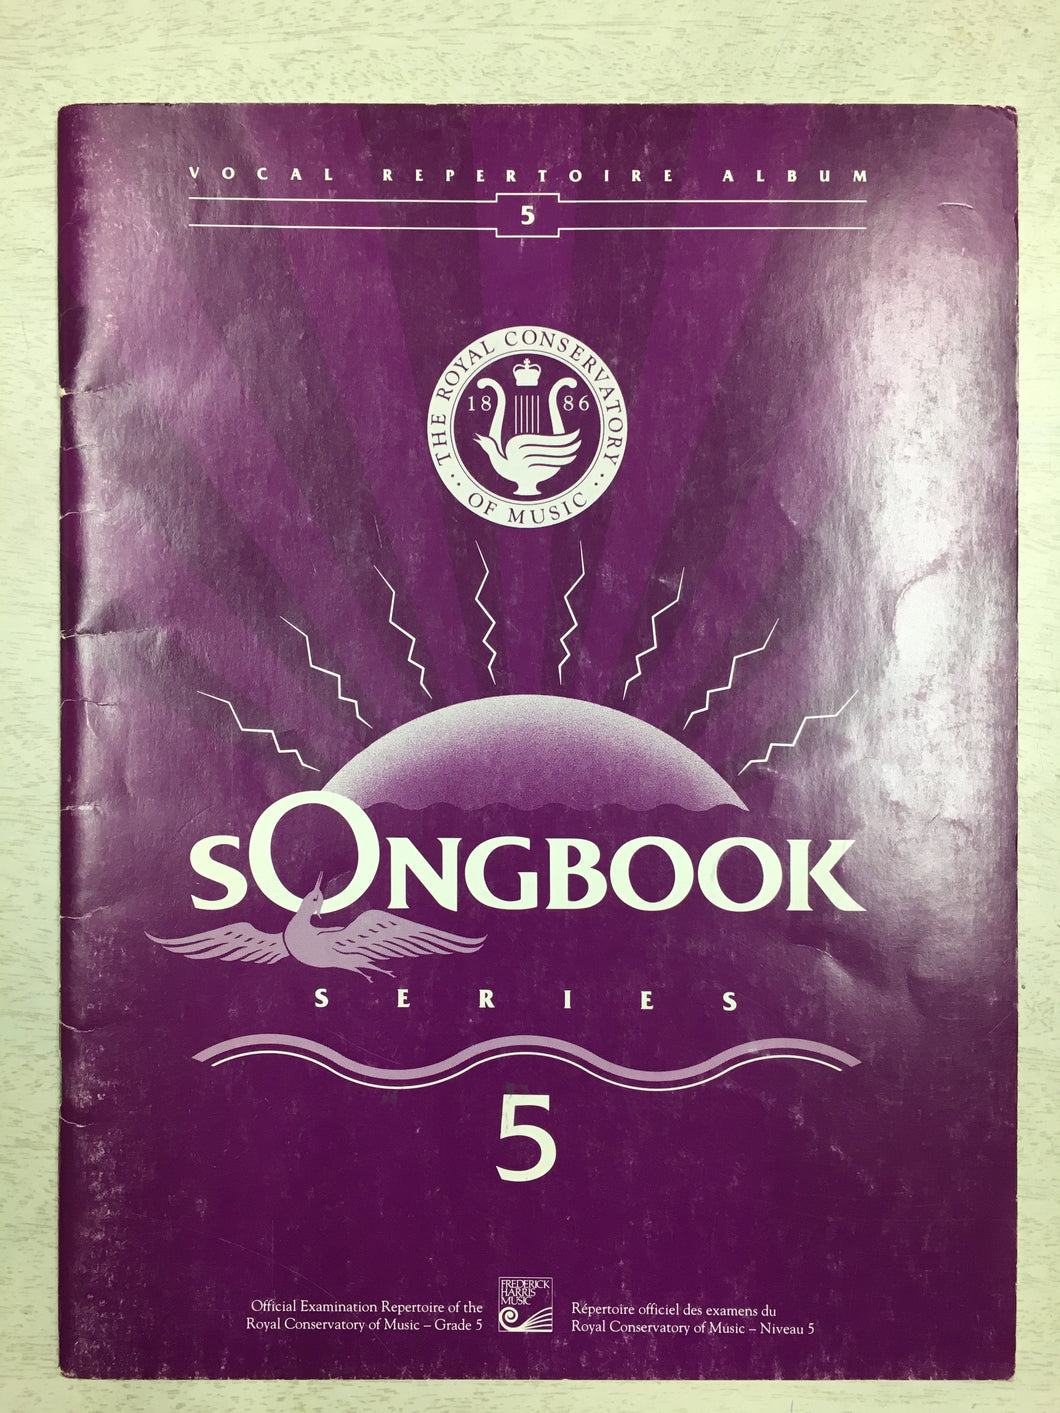 Songbook Series Voice Repertoire - Grade 5 RCM (1991)